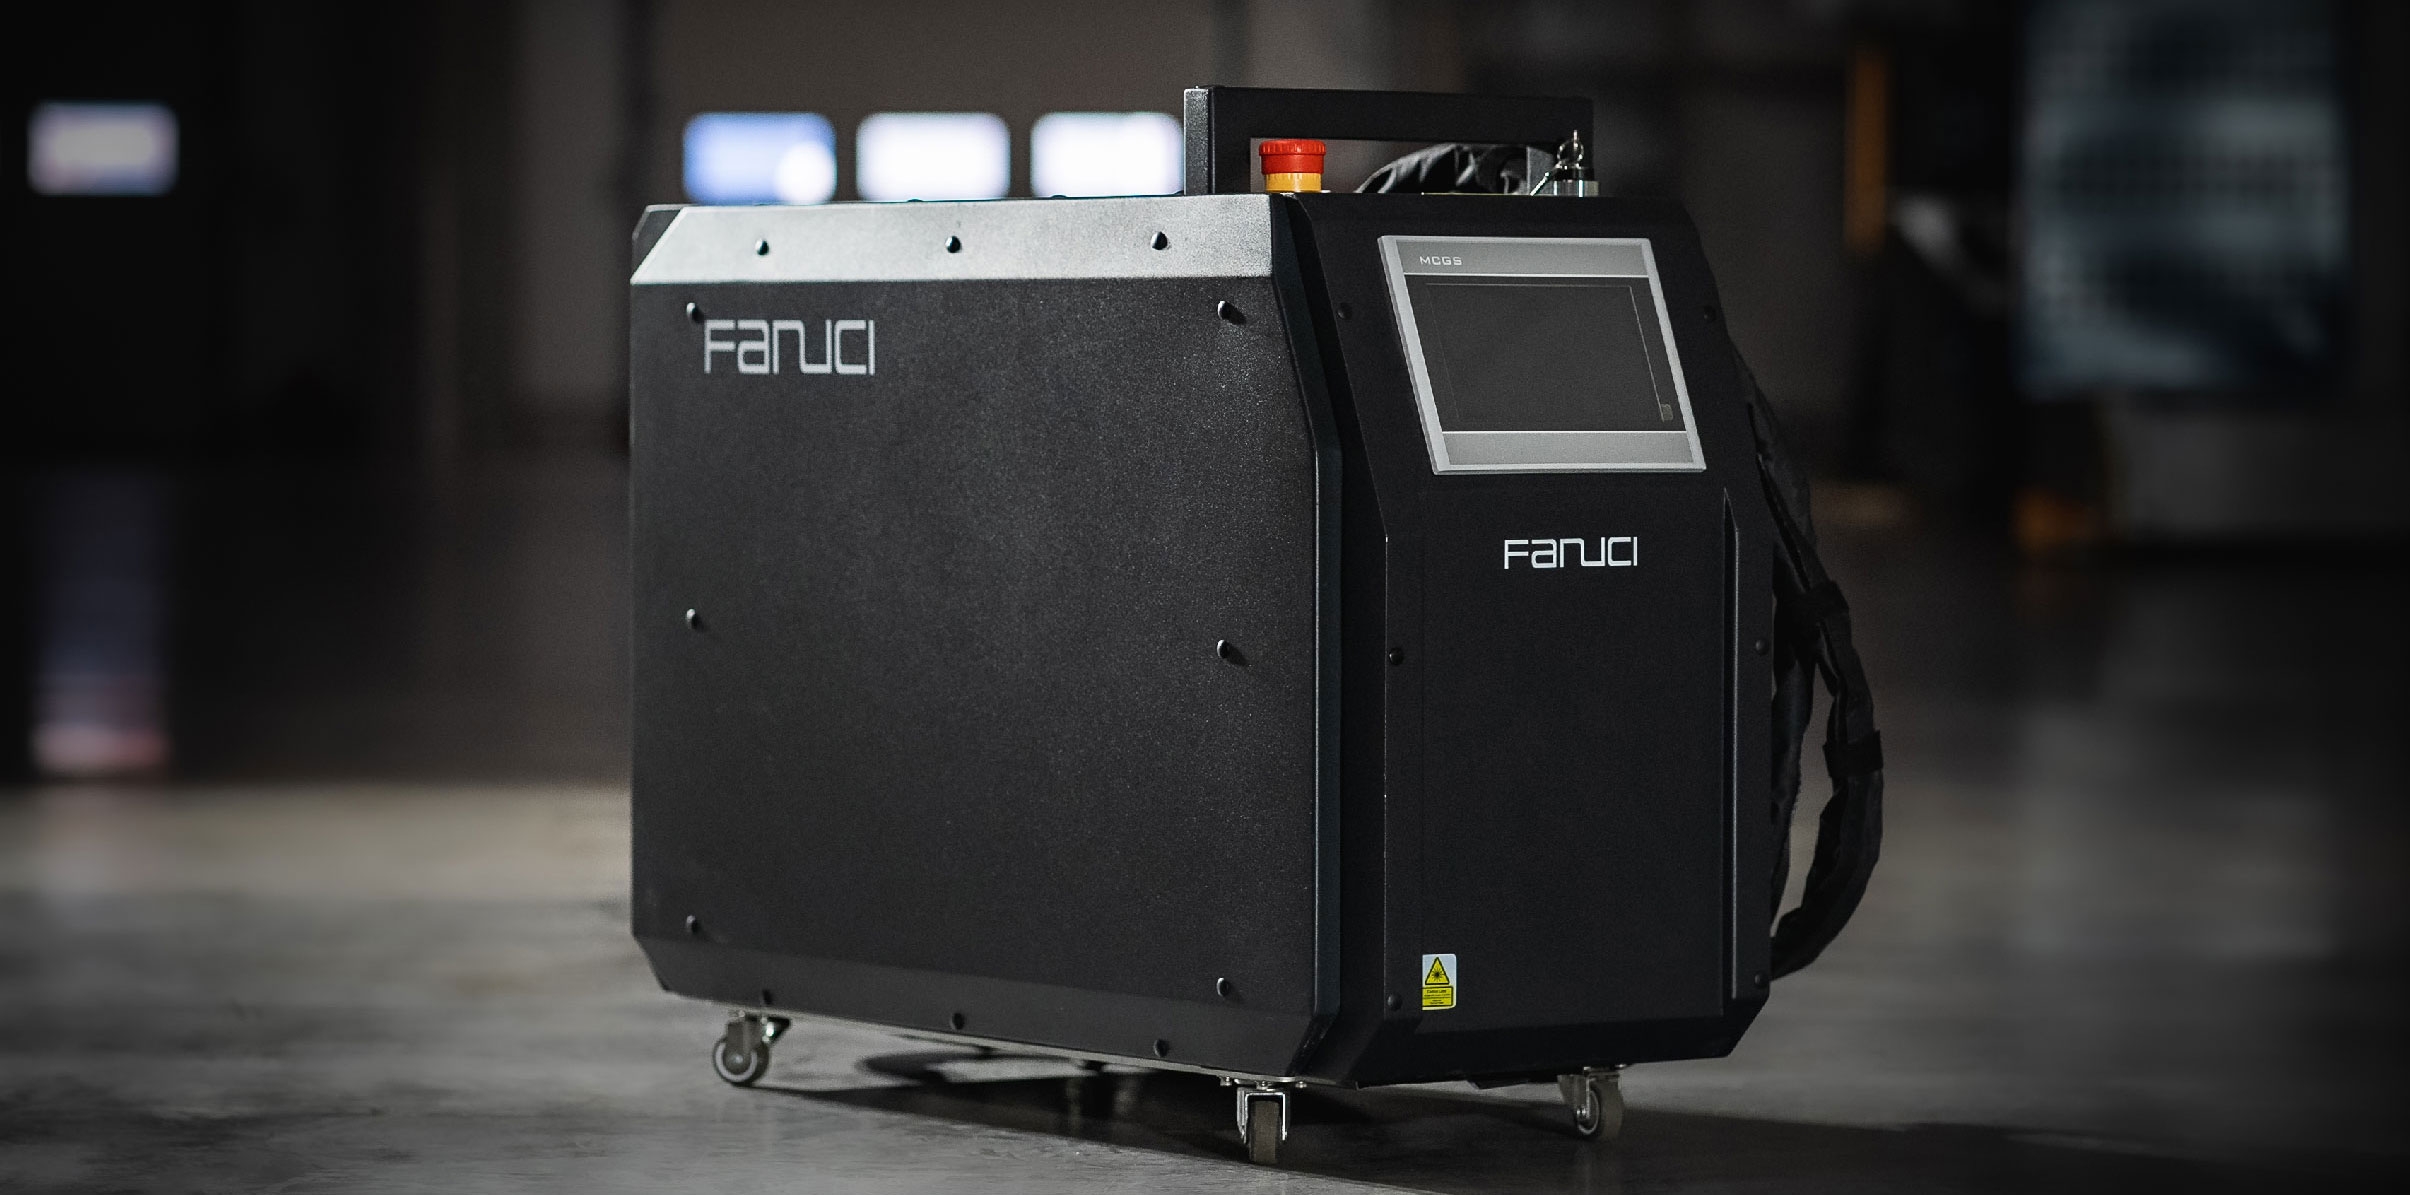 Spawarka laserowa FANUCI Pro GenX Portable – dlaczego warto zainwestować w sprzęt 4-w-1?